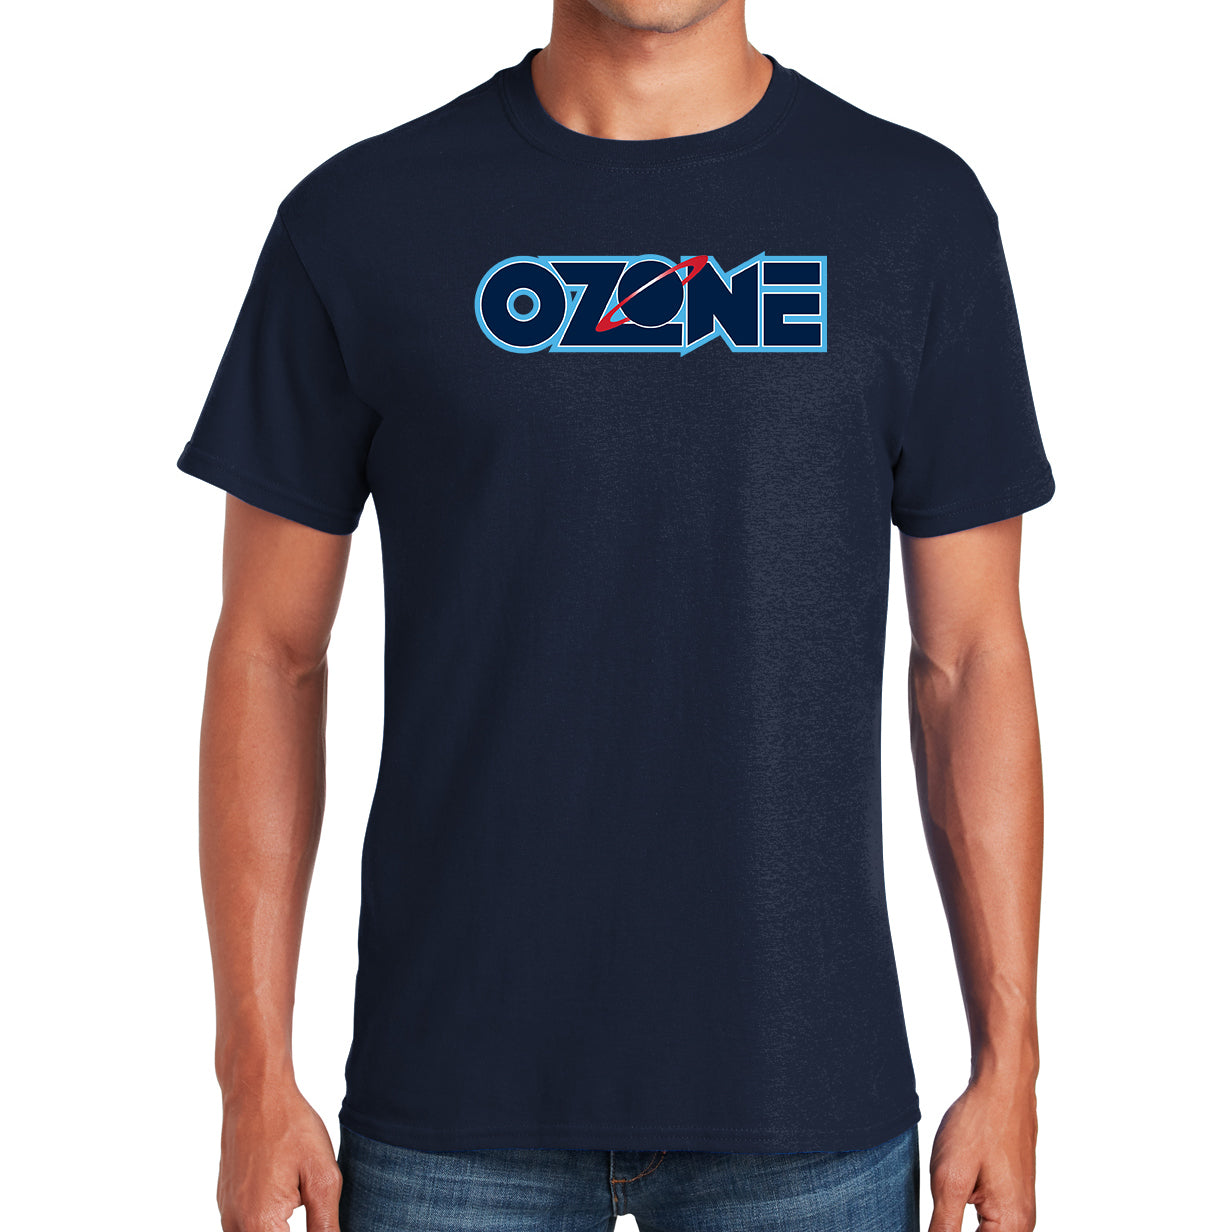 OZONE - Team T-Shirt - Navy